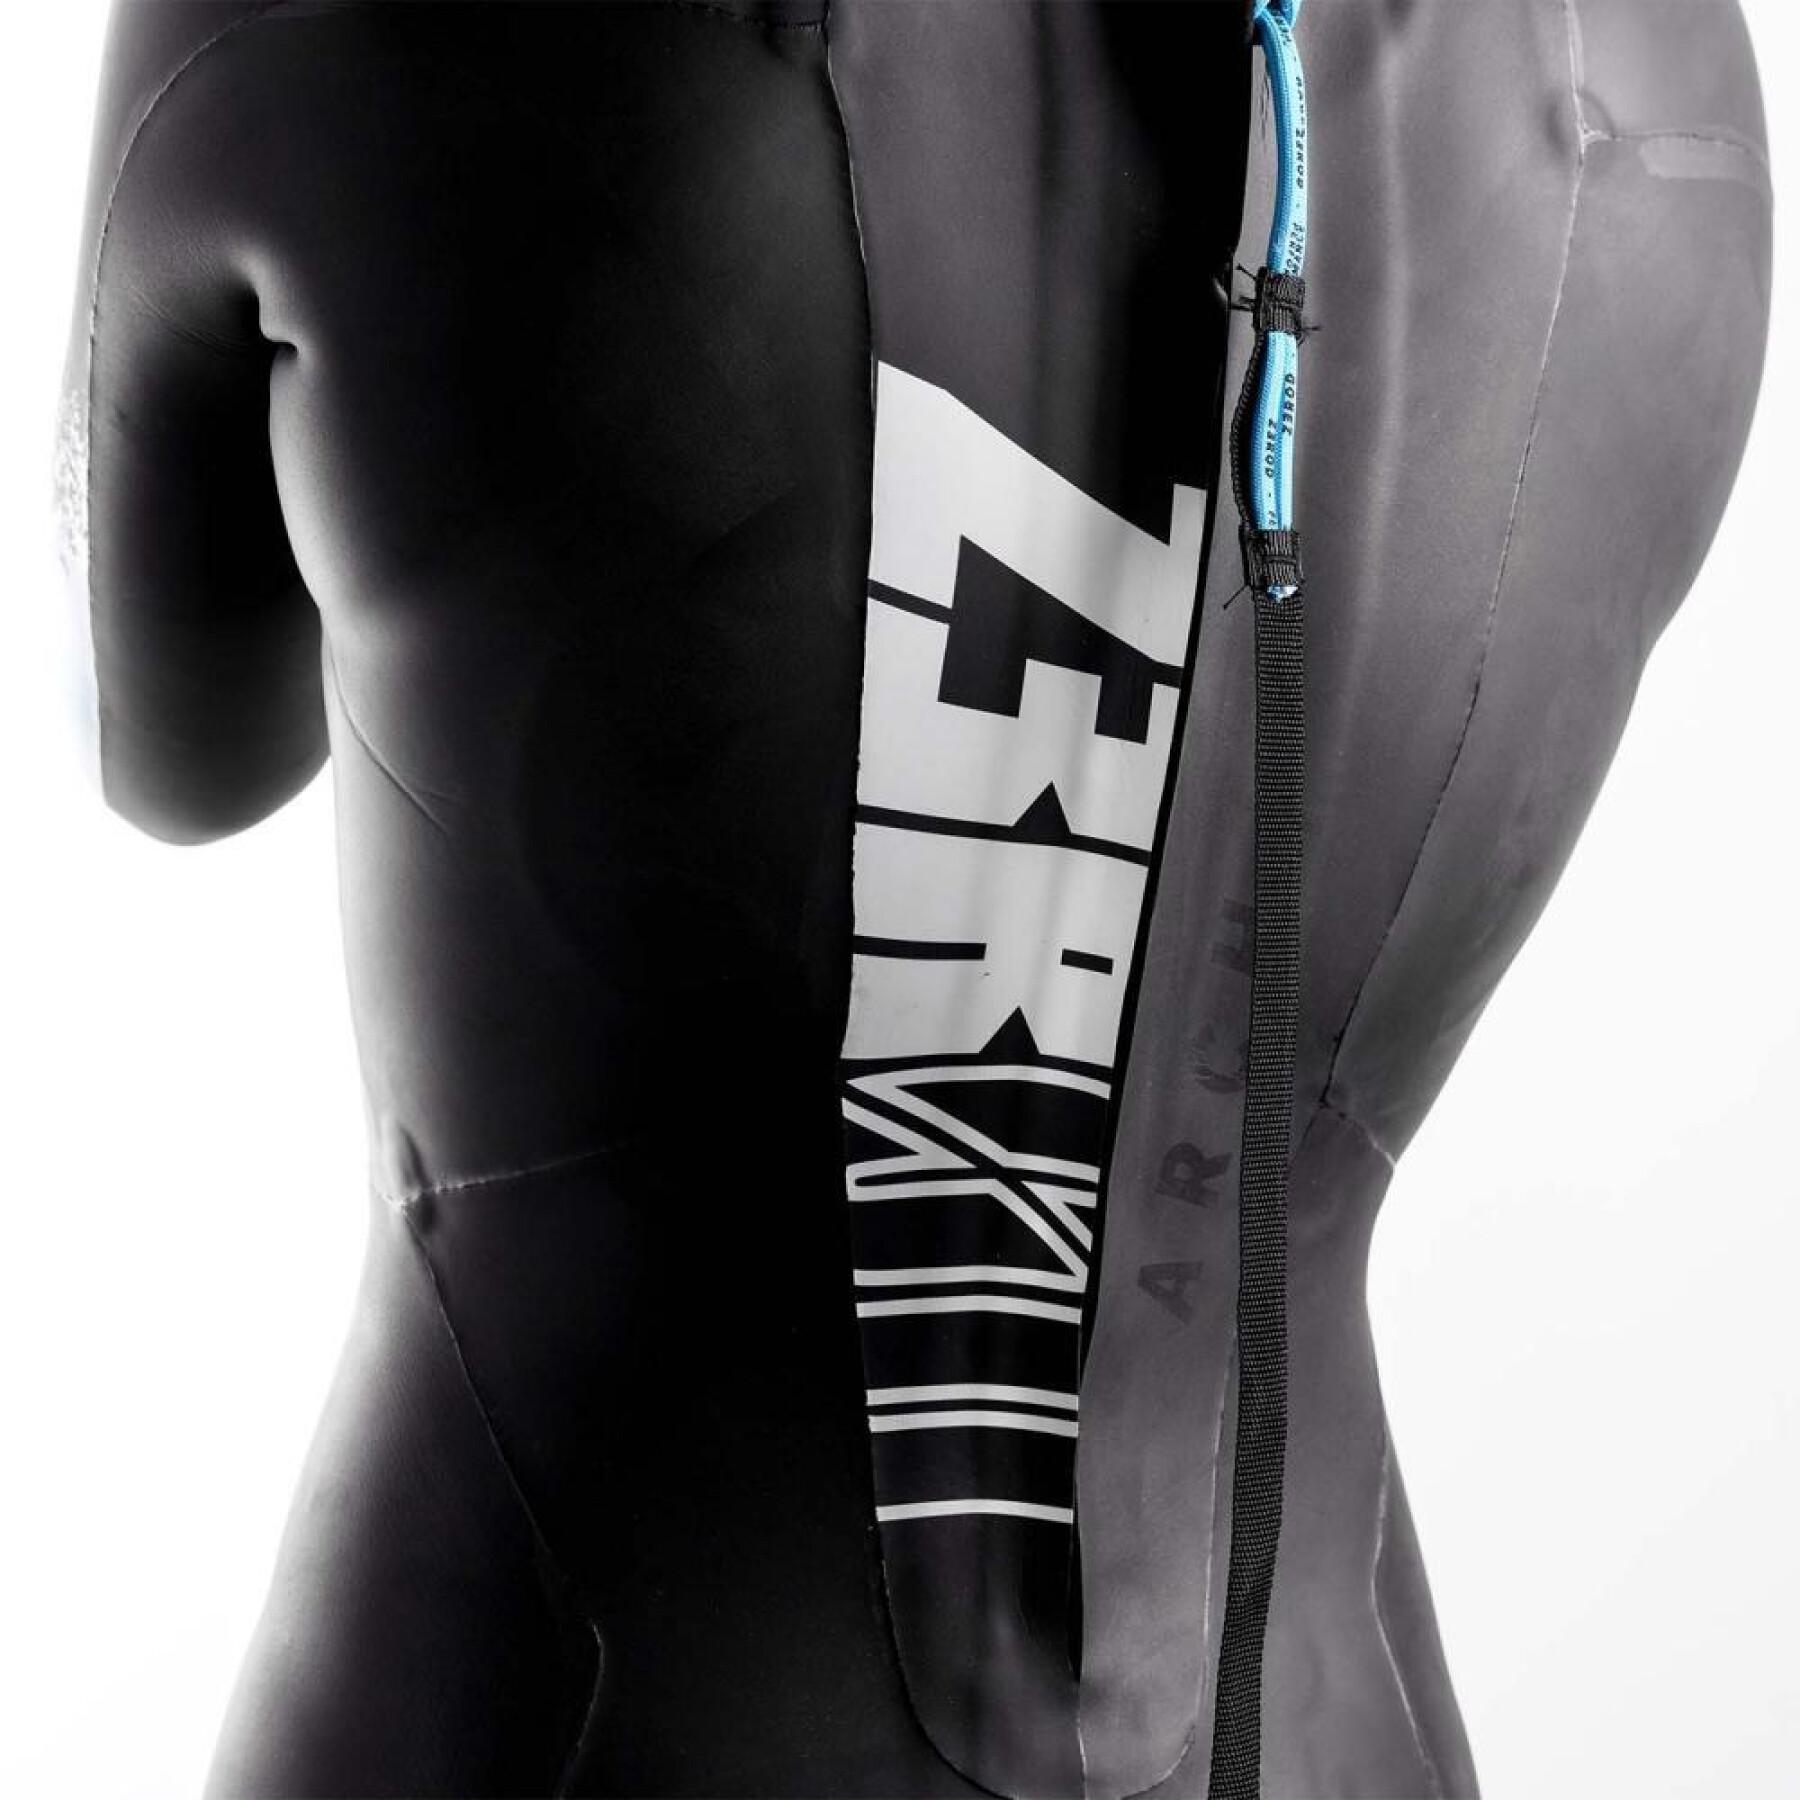 Women's triathlon suit Z3R0D Archi